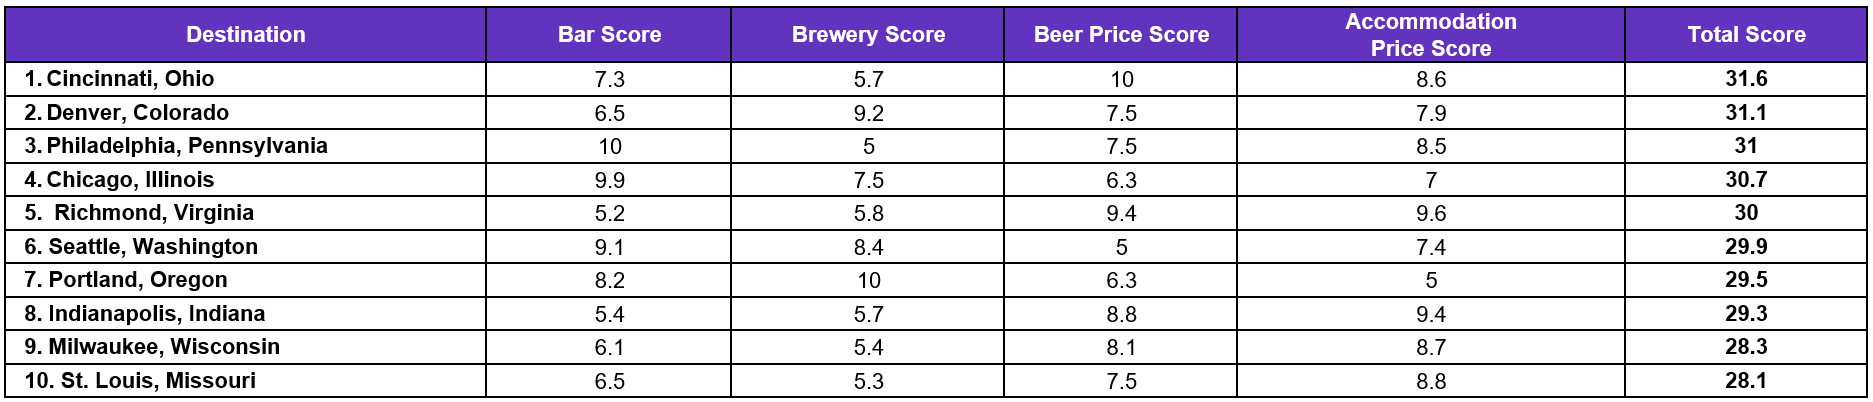 HomeToGo Top Cities in the U.S. for Beer Lovers